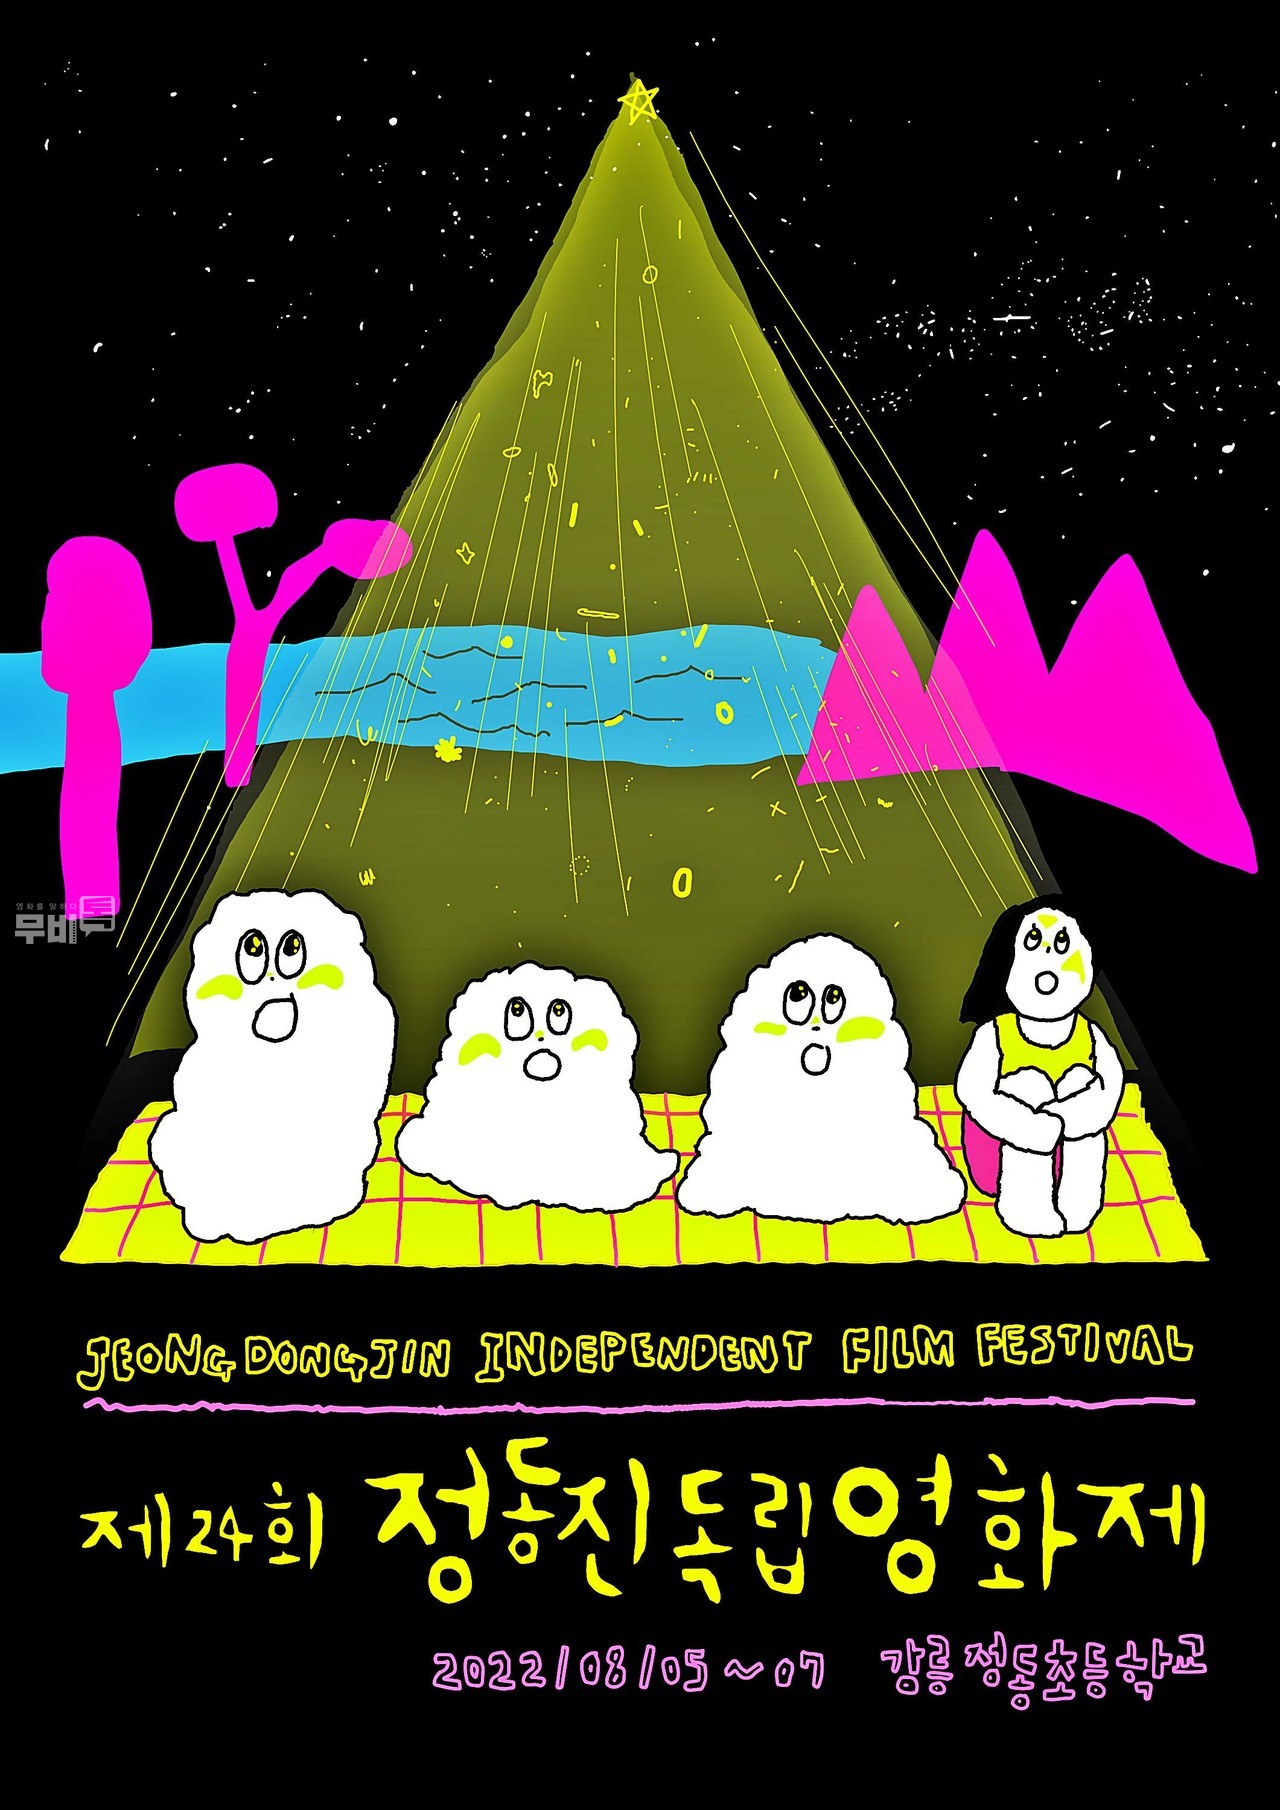 공식 포스터= 제24회 정동진독립영화제